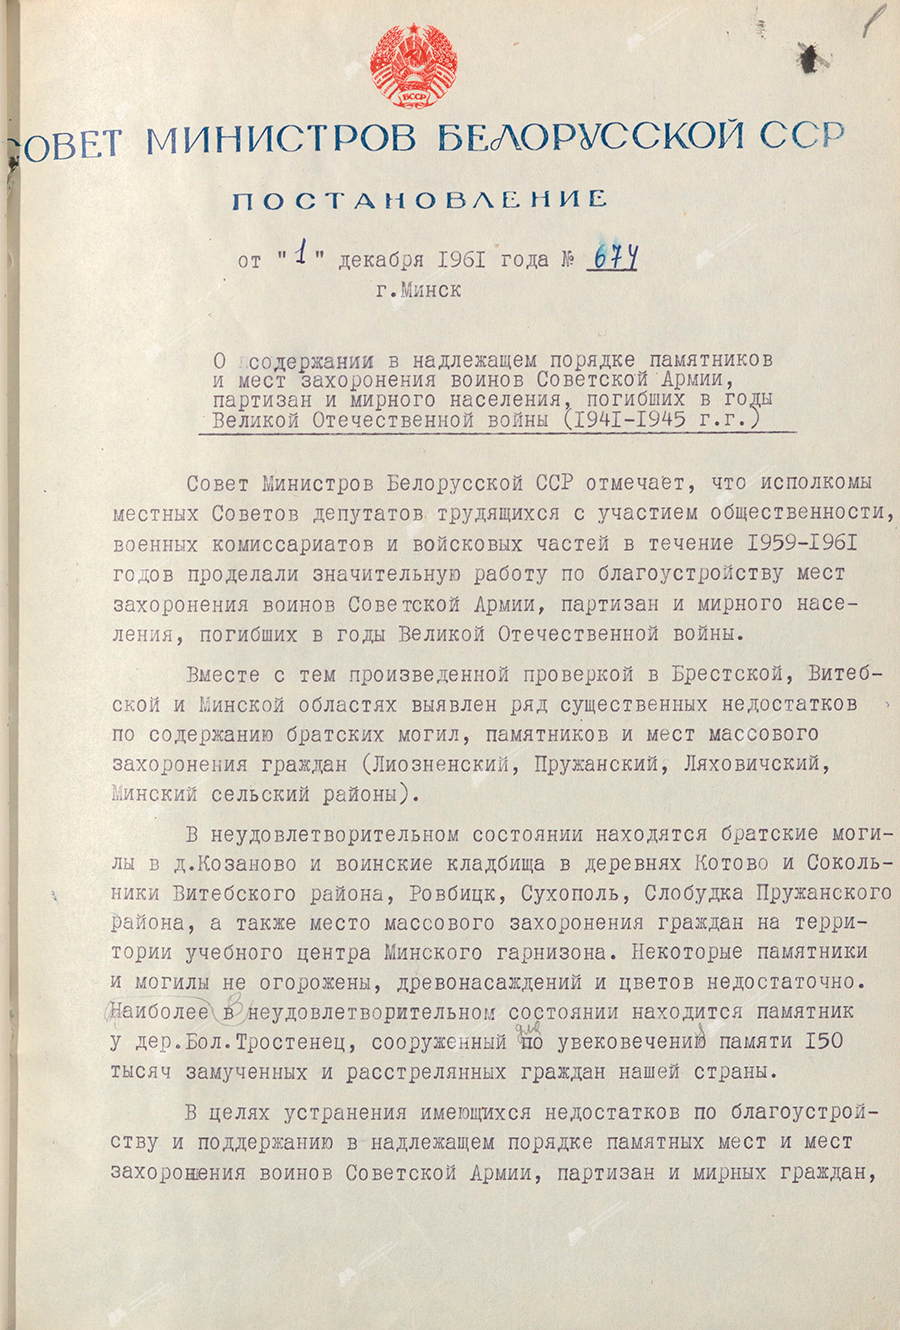 Resolution Nr. 674 des Ministerrates der BSSR «Über die ordnungsgemäße Instandhaltung von Denkmälern und Grabstätten von Soldaten der Sowjetarmee, Partisanen und Zivilisten, die während des Großen Vaterländischen Krieges (1941 – 1945) starben»-с. 0